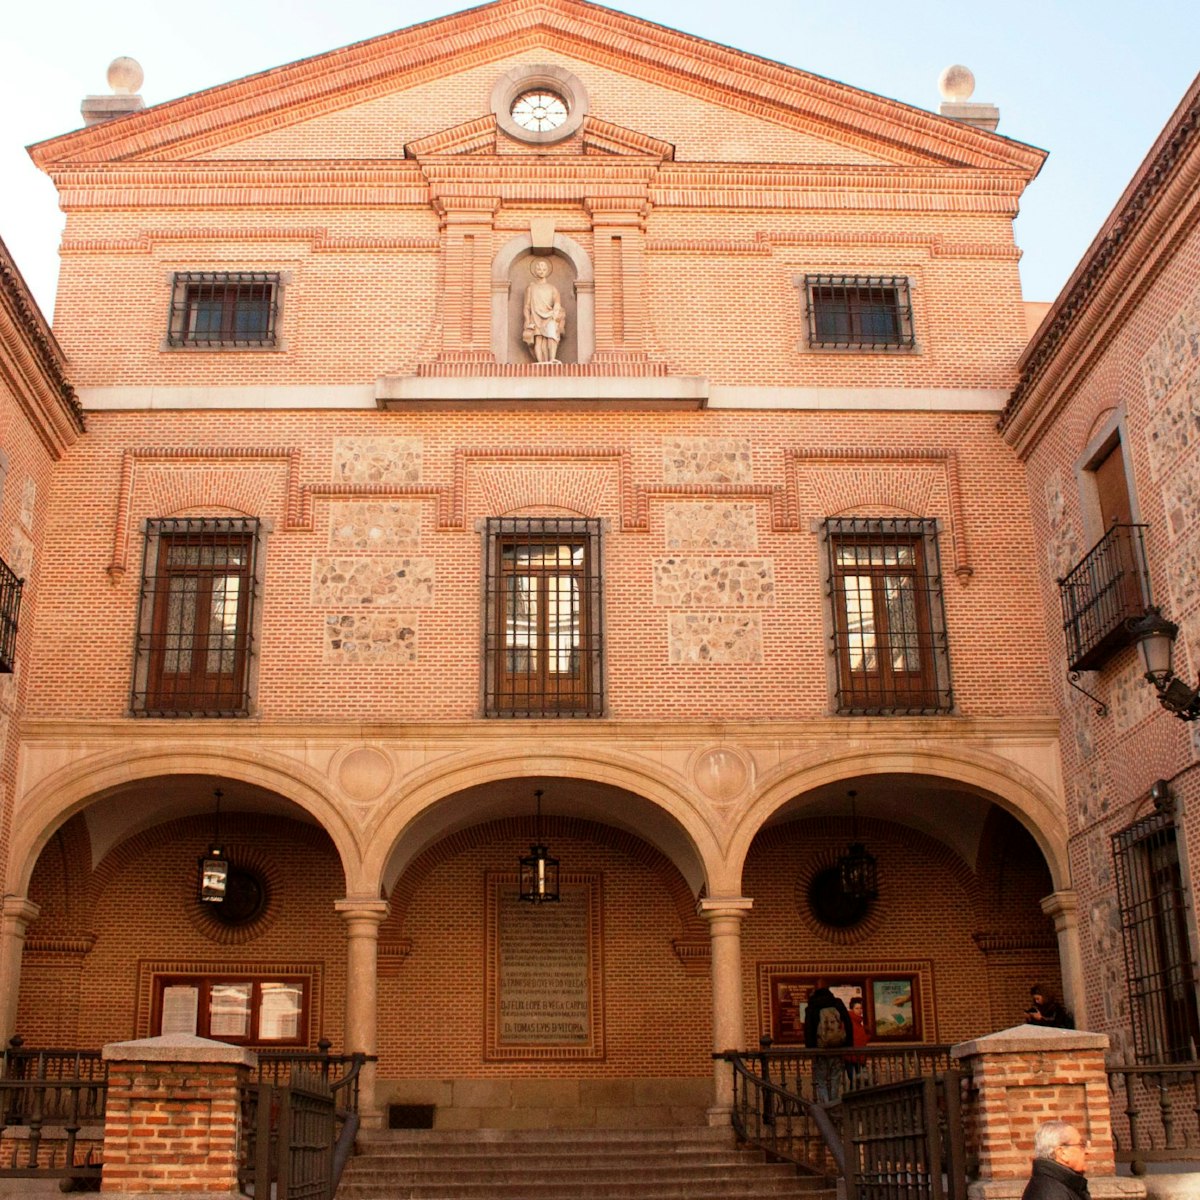 The entrance to Iglesia de San Ginés  from Calle Arenal.